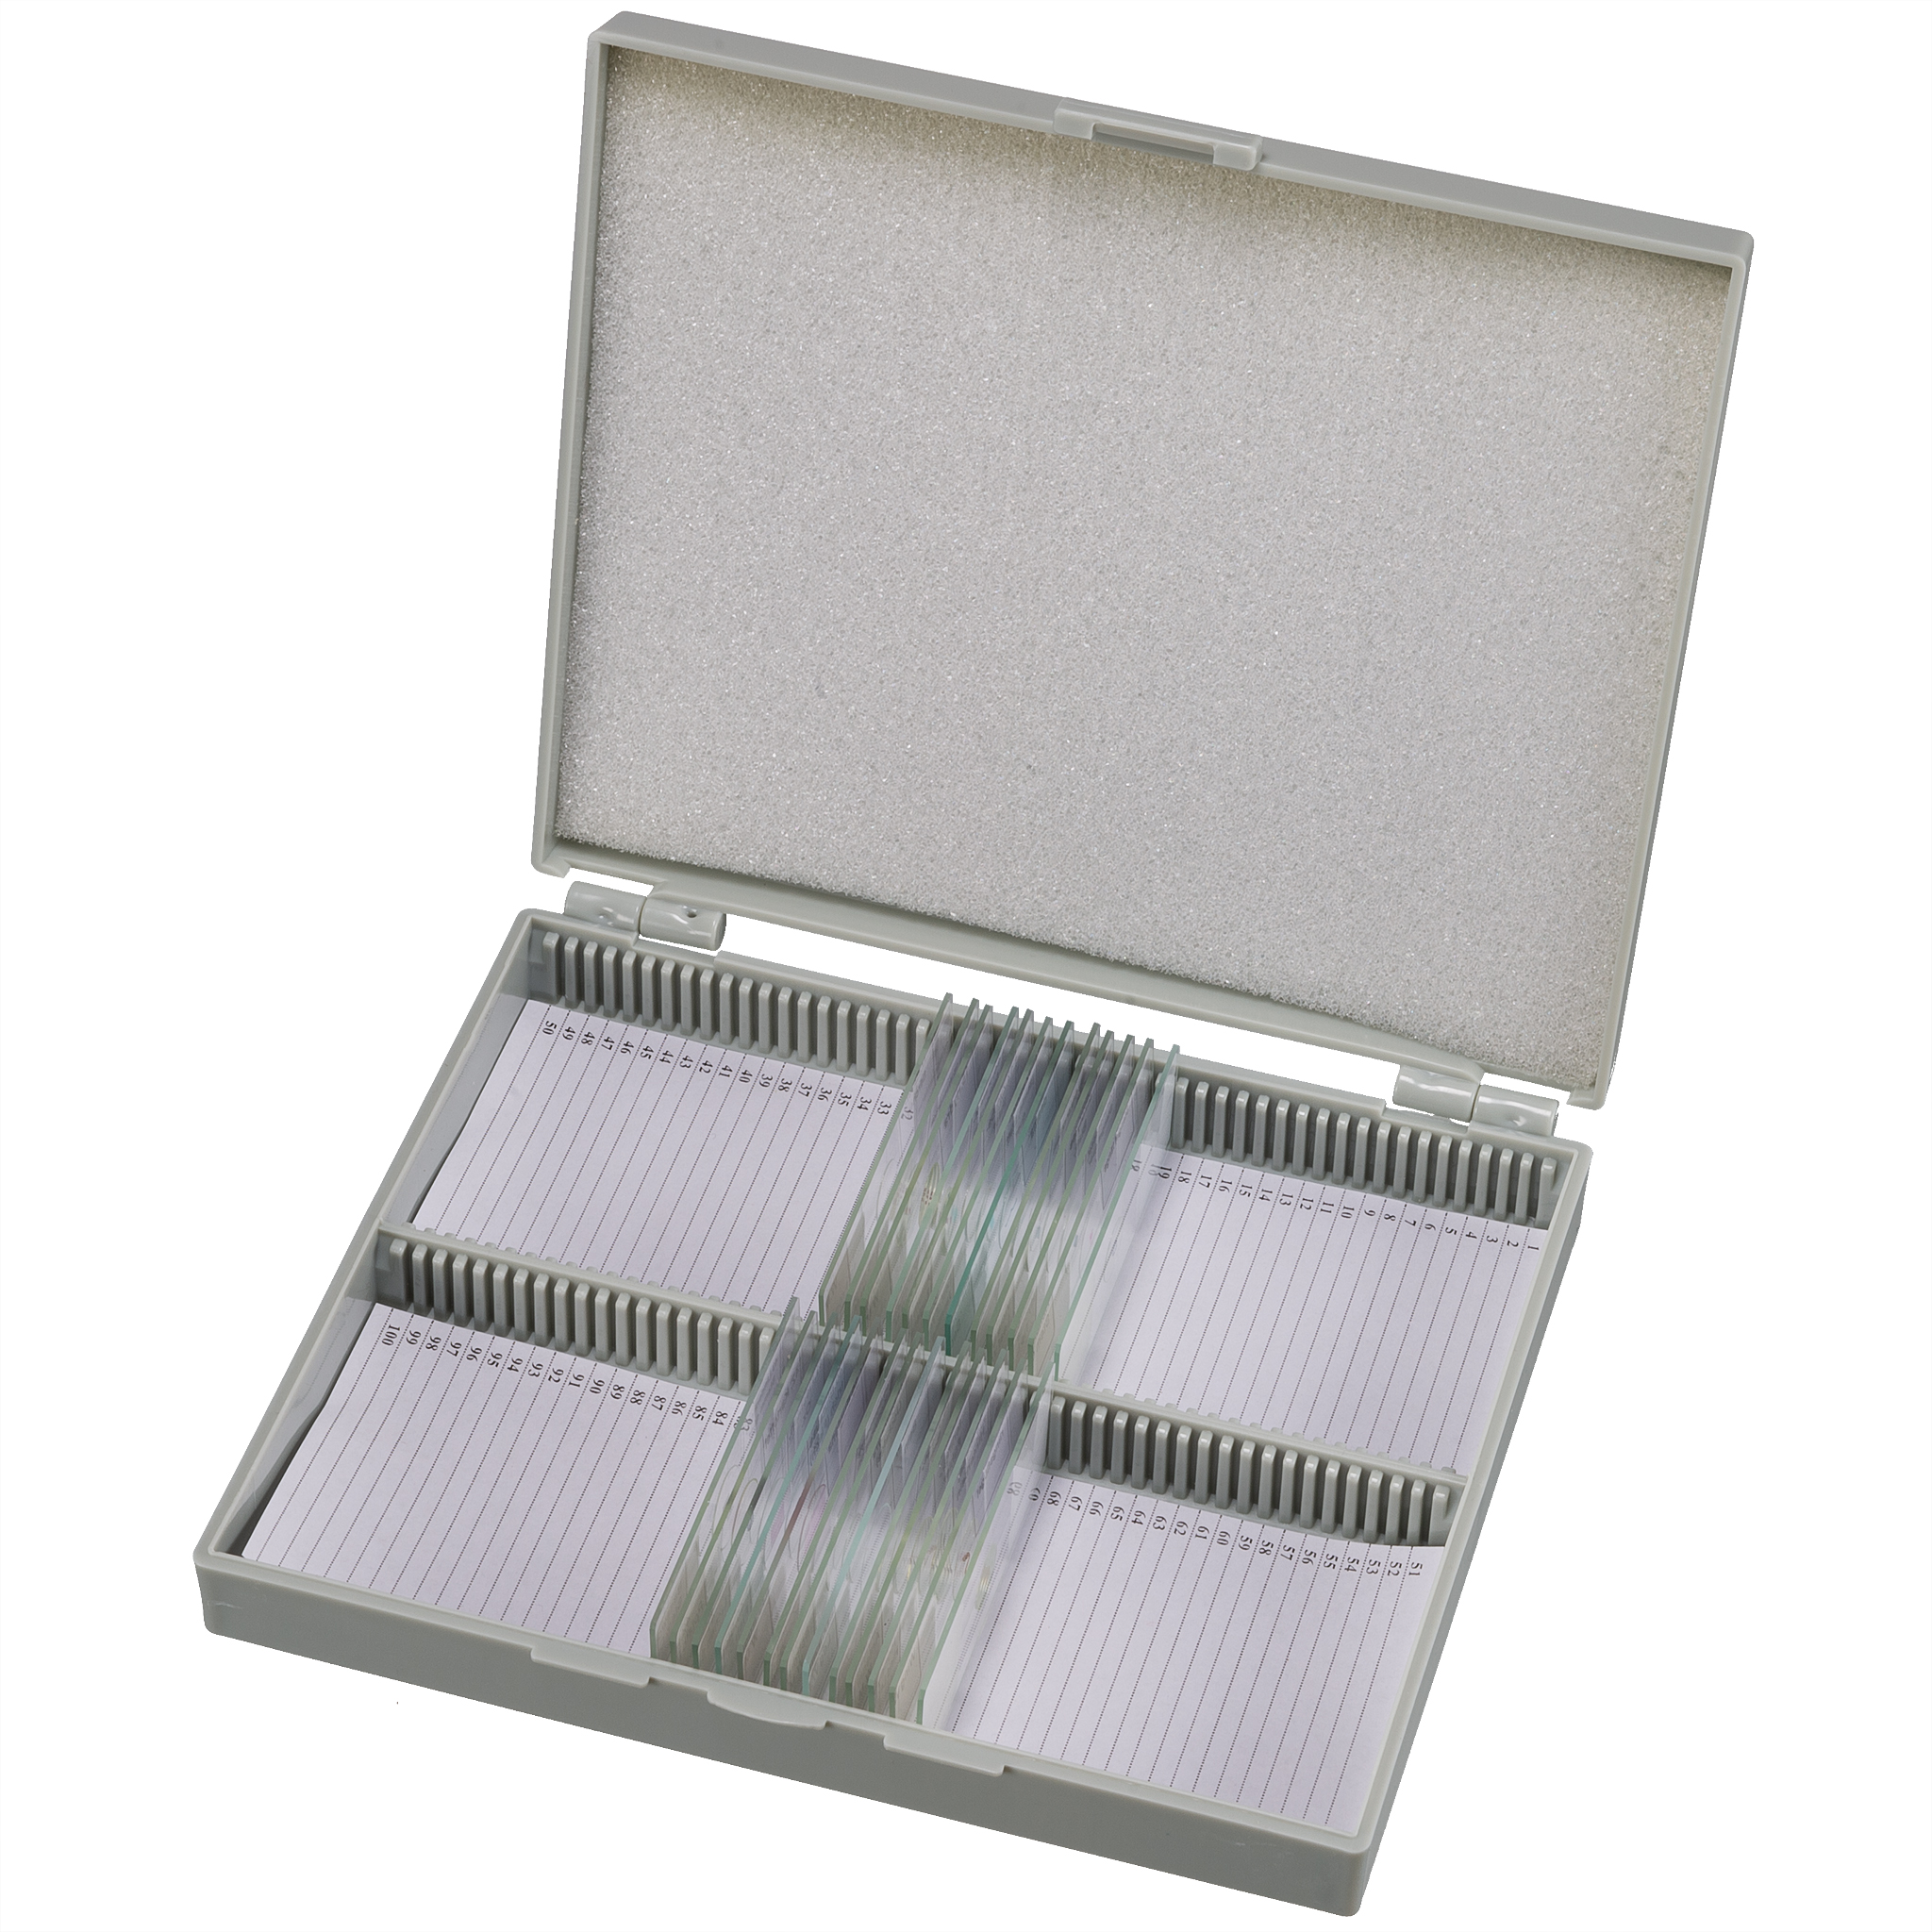 BRESSER Dauerpräparate Set mit 25 vorgefertigten und gefärbten Präparaten